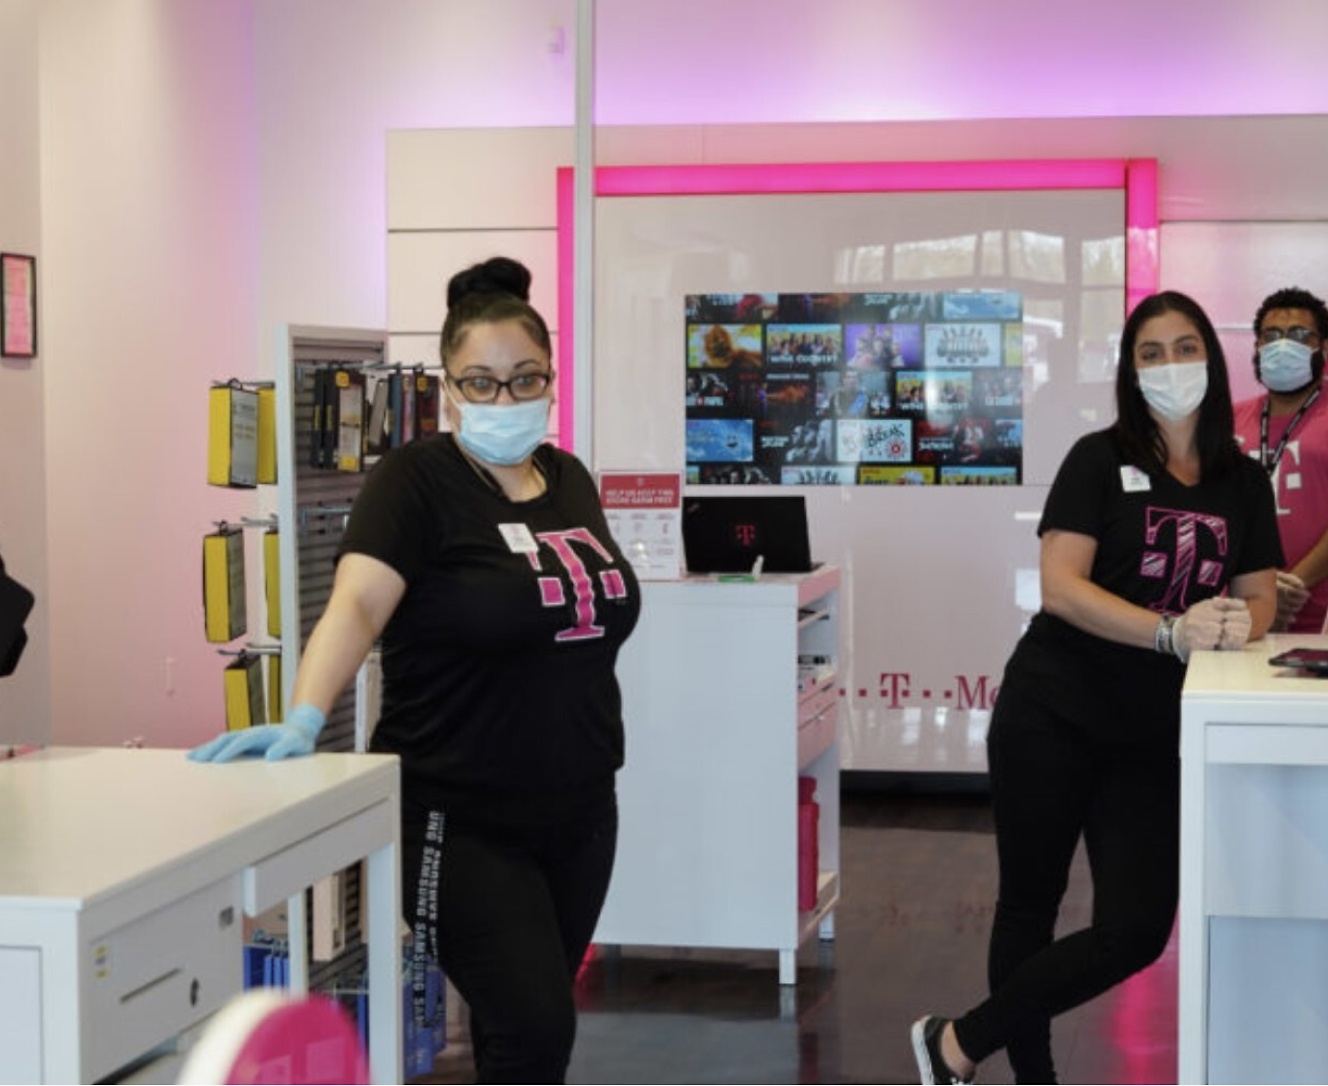 Μια ομάδα ατόμων που φοράνε μάσκες προσώπου σε ένα κατάστημα.